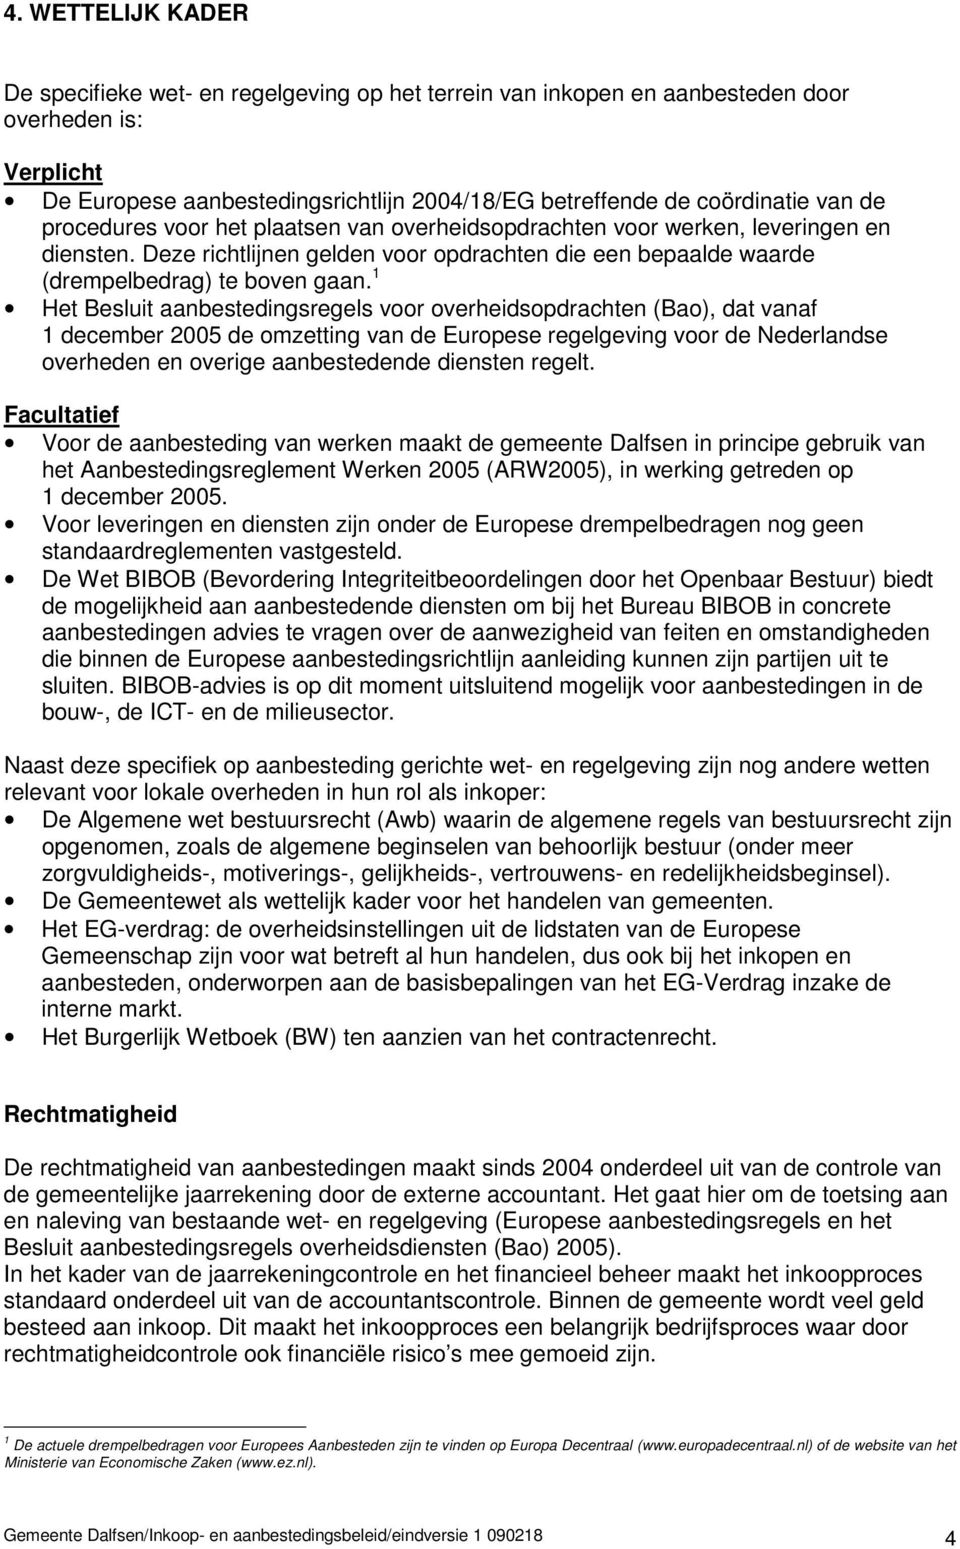 1 Het Besluit aanbestedingsregels voor overheidsopdrachten (Bao), dat vanaf 1 december 2005 de omzetting van de Europese regelgeving voor de Nederlandse overheden en overige aanbestedende diensten